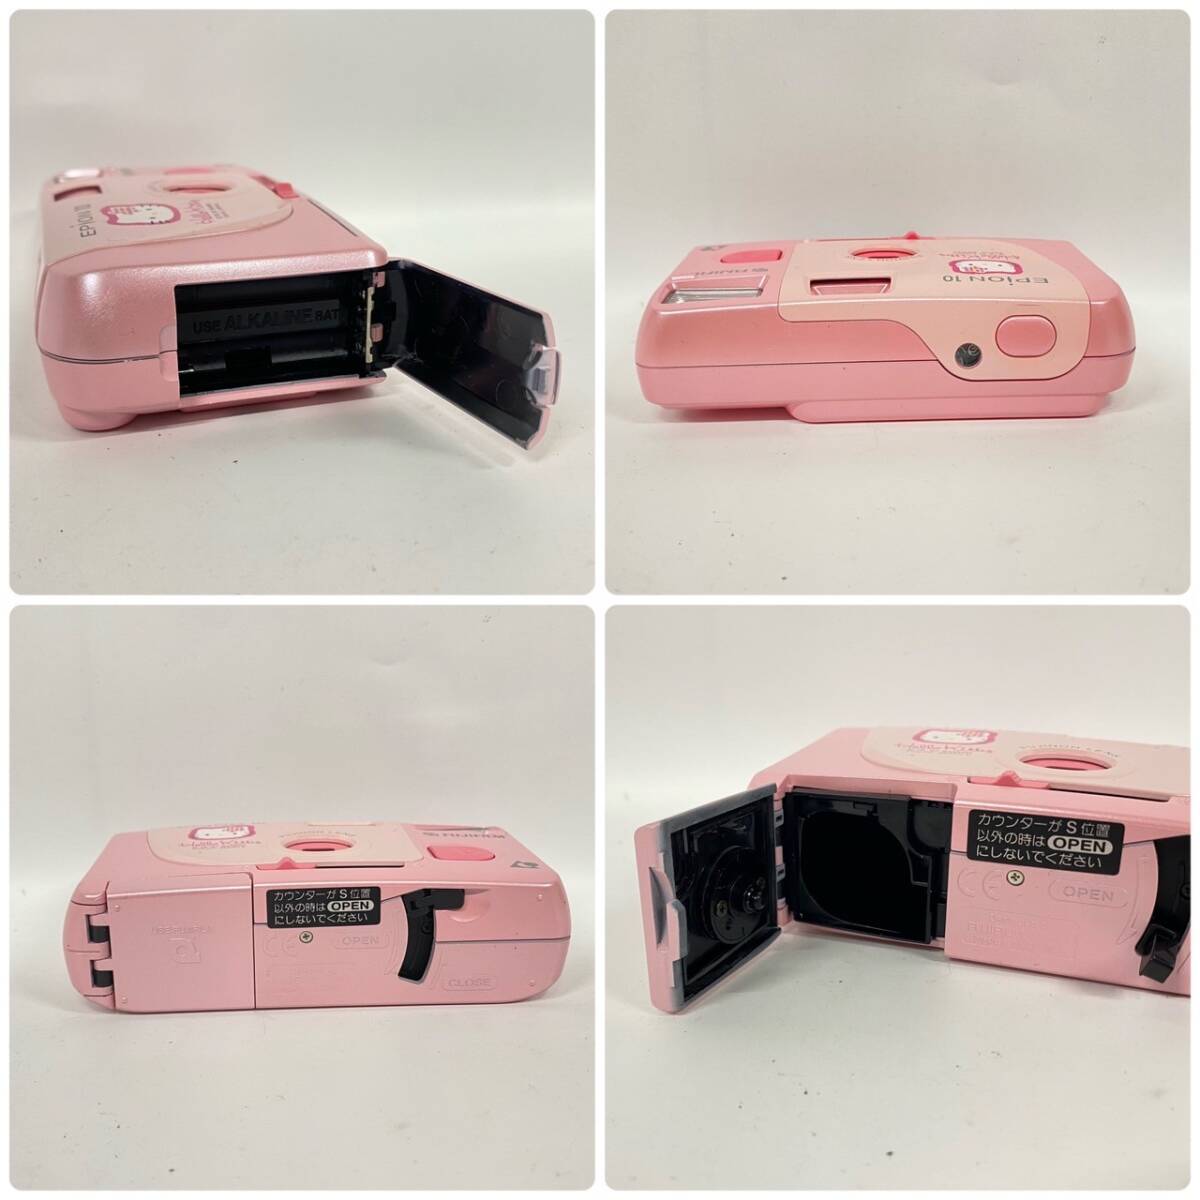 1 jpy ~[3 point ]Hello Kitty Hello Kitty camera summarize Polaroid camera Fuji film FUJIFILM instax mini EPION10 accessory equipped G142807